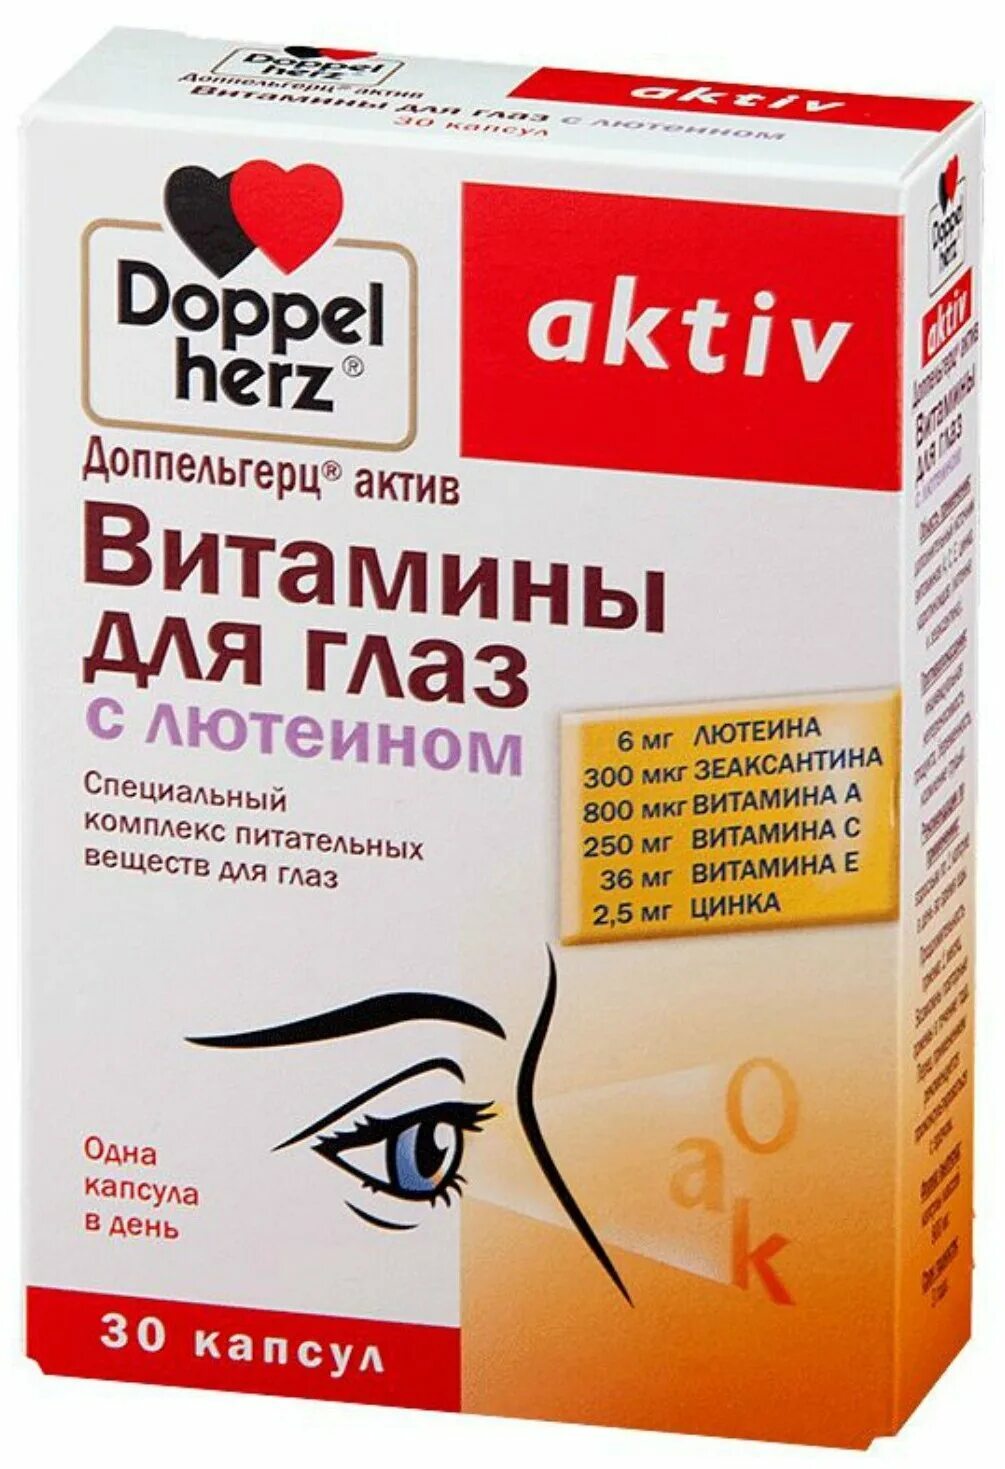 Доппельгерц витамины для глаз. Витамины для глаз допель Герц с лютеином. Доппельгерц Актив витамины капсулы. Доппельгерц Актив витамины для глаз с лютеином. Витамины для глаз отзывы пациентов